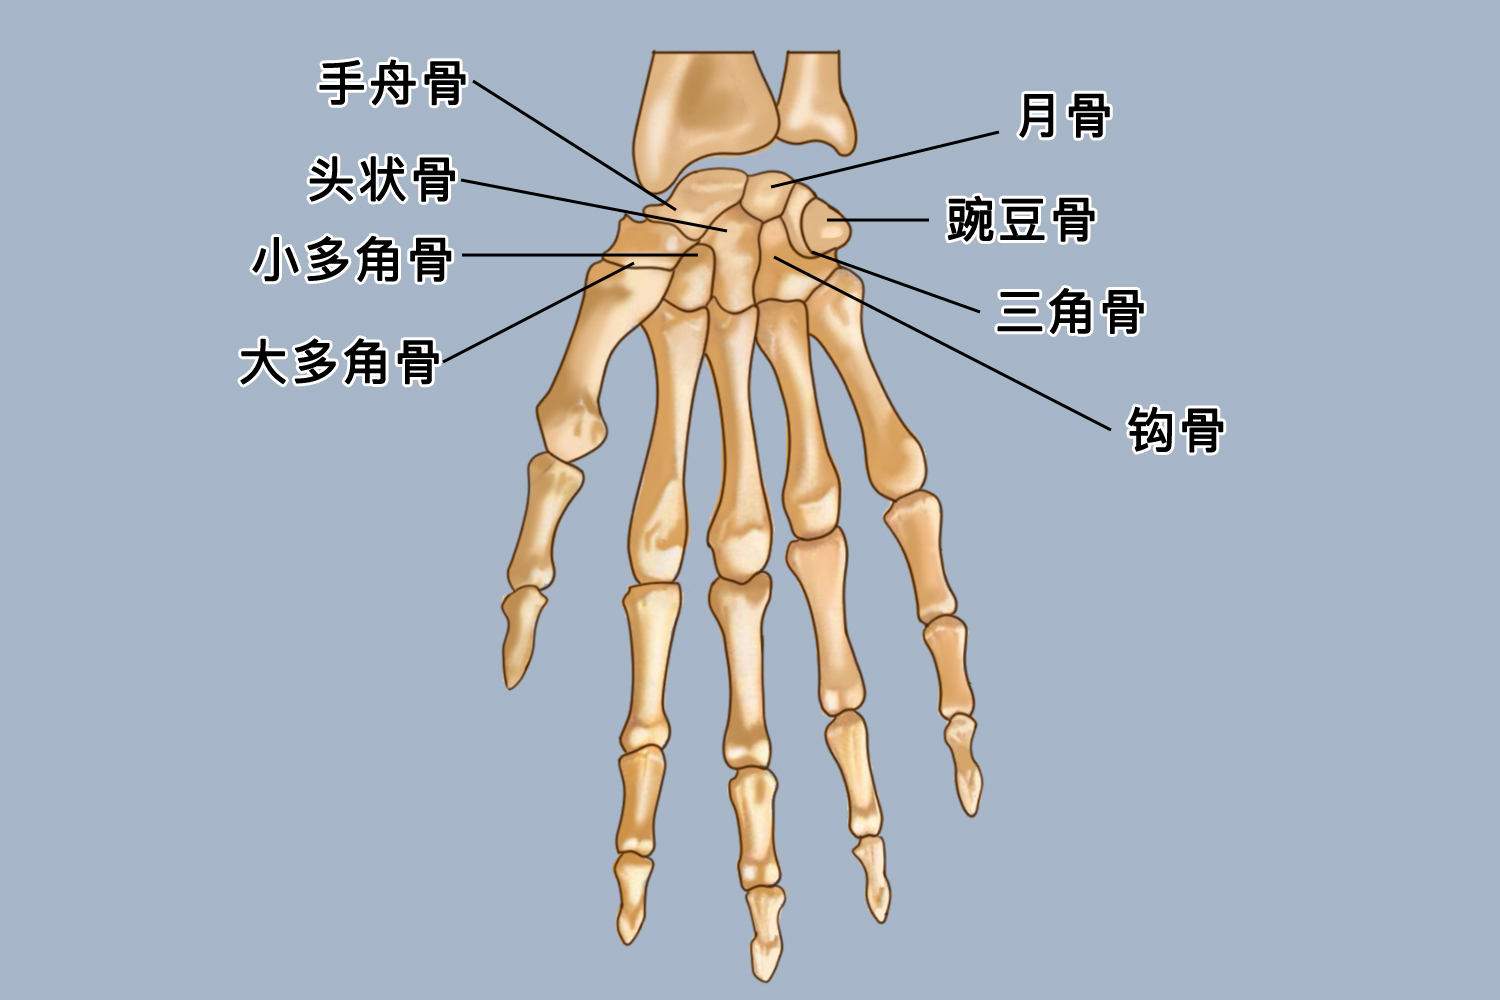 手腕三角骨是腕骨近端的组成部分,其占据了腕部尺侧的大部分位置,在月